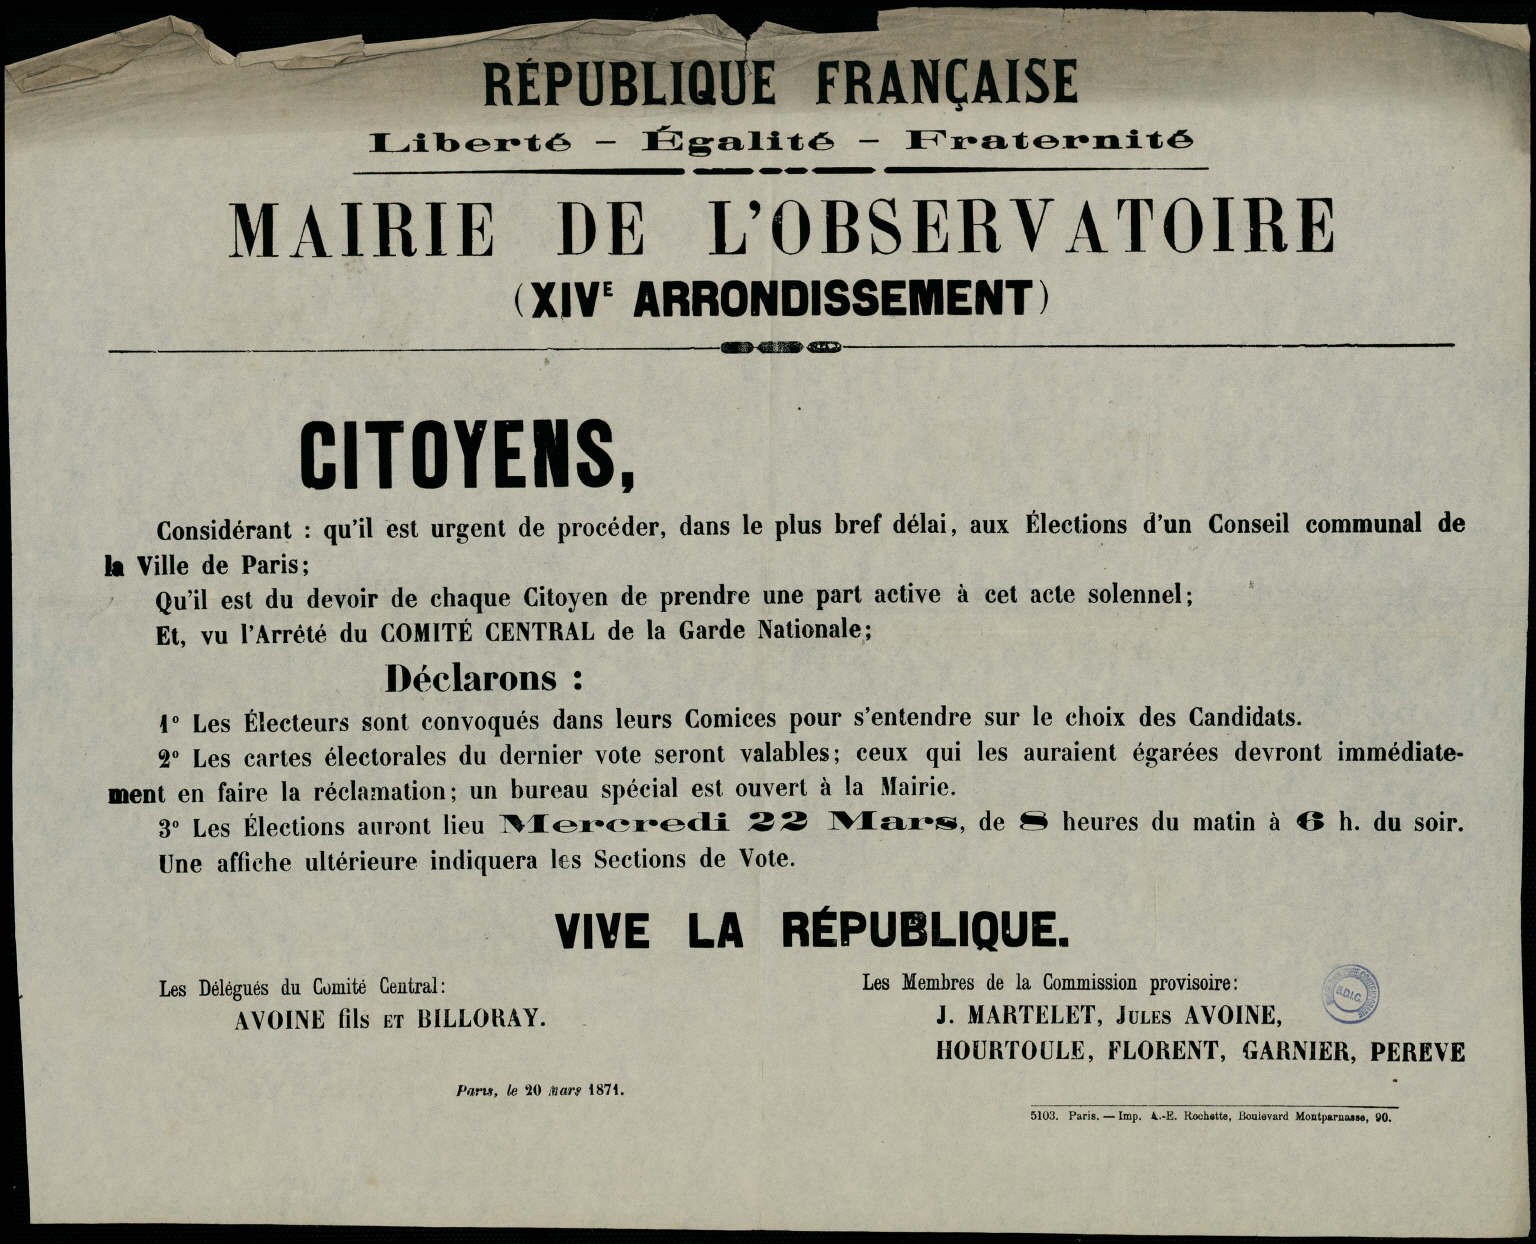 Affiche de la Commune du 20 mars 1871 – Mairie du XIVe arrondissement, annonce des élections le 22 mars